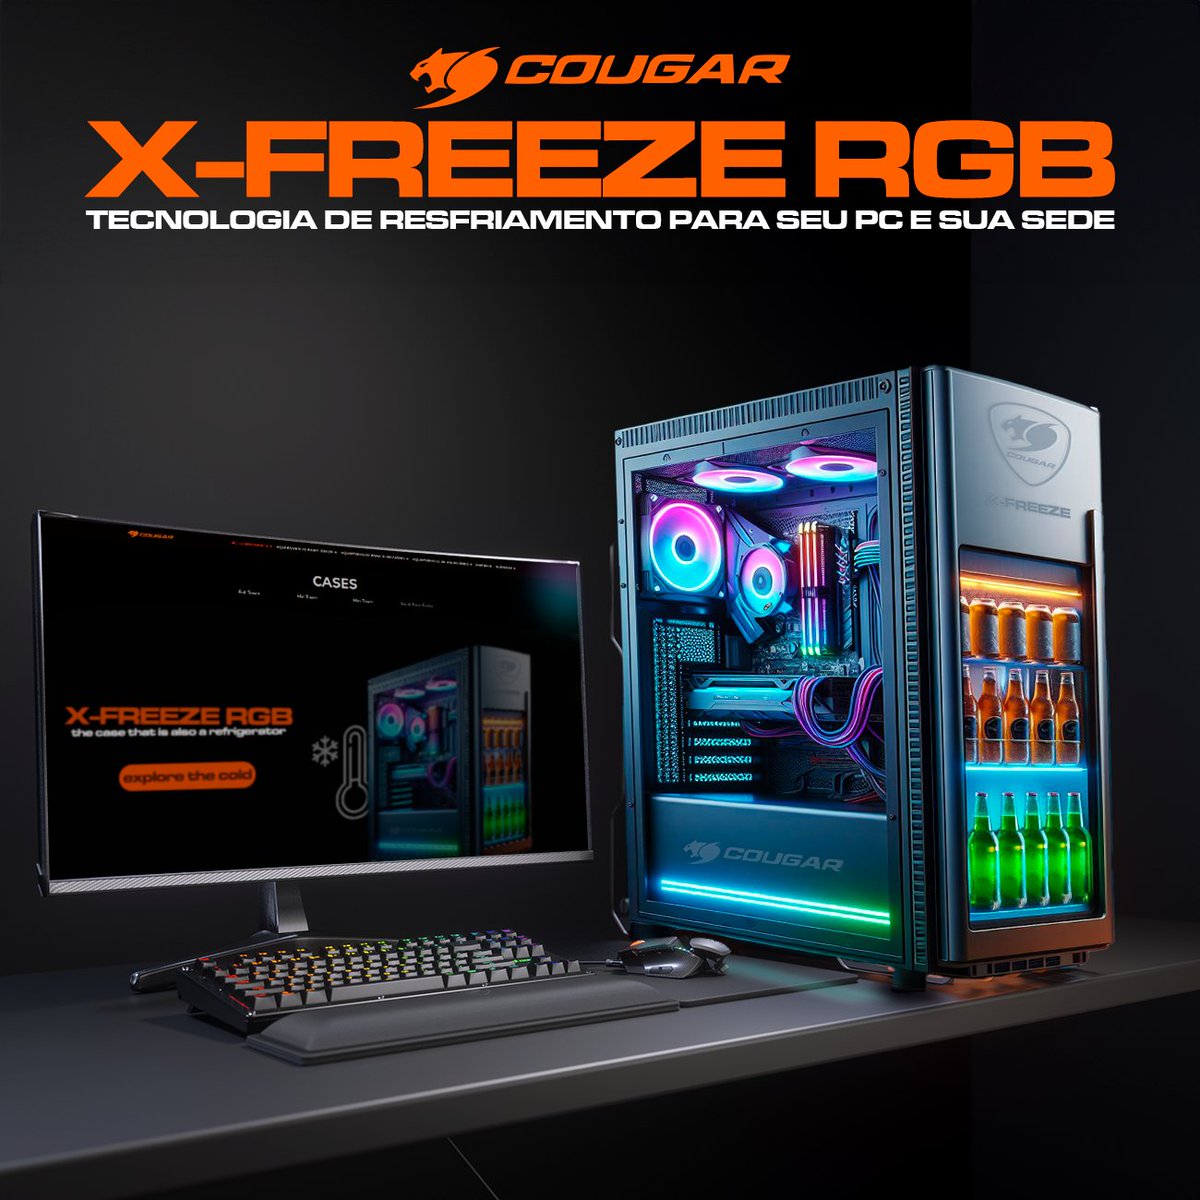 Prepare-se para uma revolução no mundo dos PCs! Apresentamos o Cougar X-Freeze RGB, o gabinete que promete manter seu PC gelado e suas bebidas ainda mais frescas! 😎 Mas... espera aí! Não esqueça que hoje é 1º de Abril! 🤥🤣 Por mais que desejássemos que o X-Freeze fosse real,